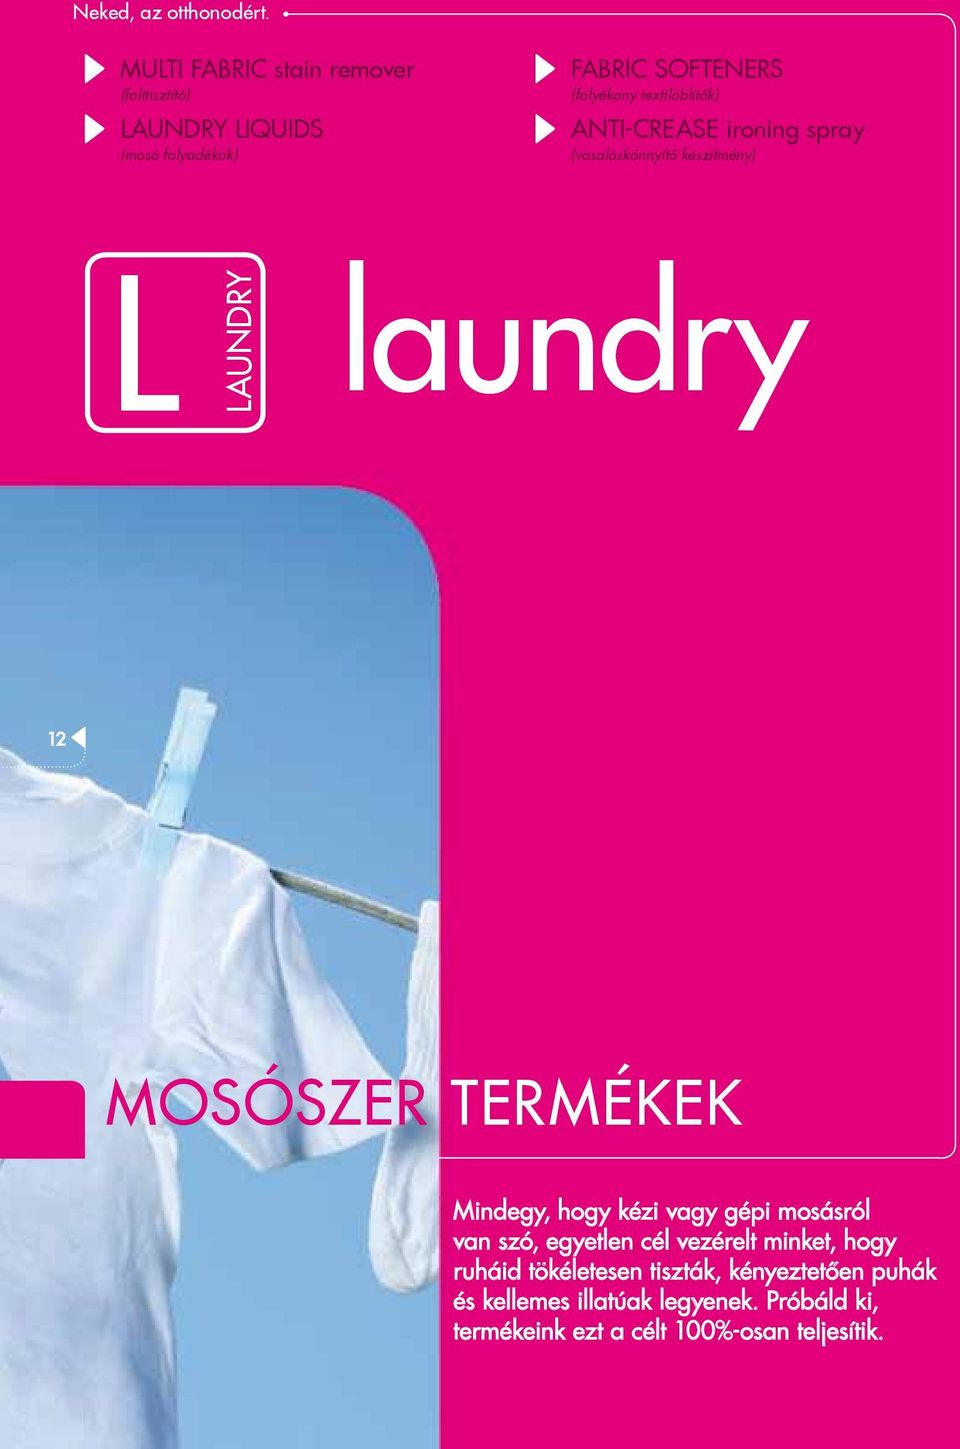 textilöblítők) ANTI-CREASE ironing spray (vasaláskönnyítő készítmény) l laundry laundry 12 MOSÓSZER TERMÉKEK